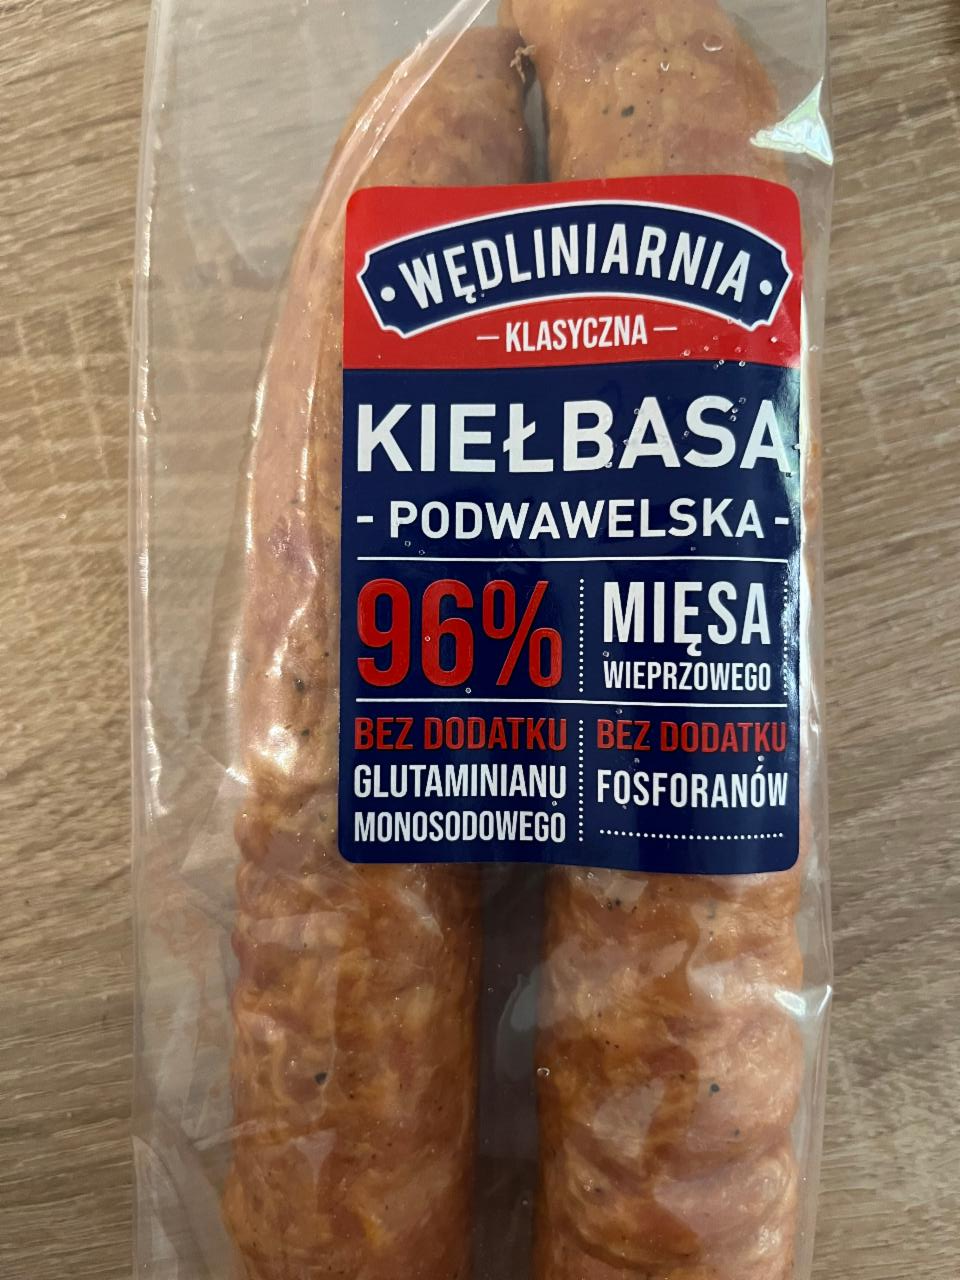 Фото - Kiełbasa podwawelska 96% miesa Wedliniarnia